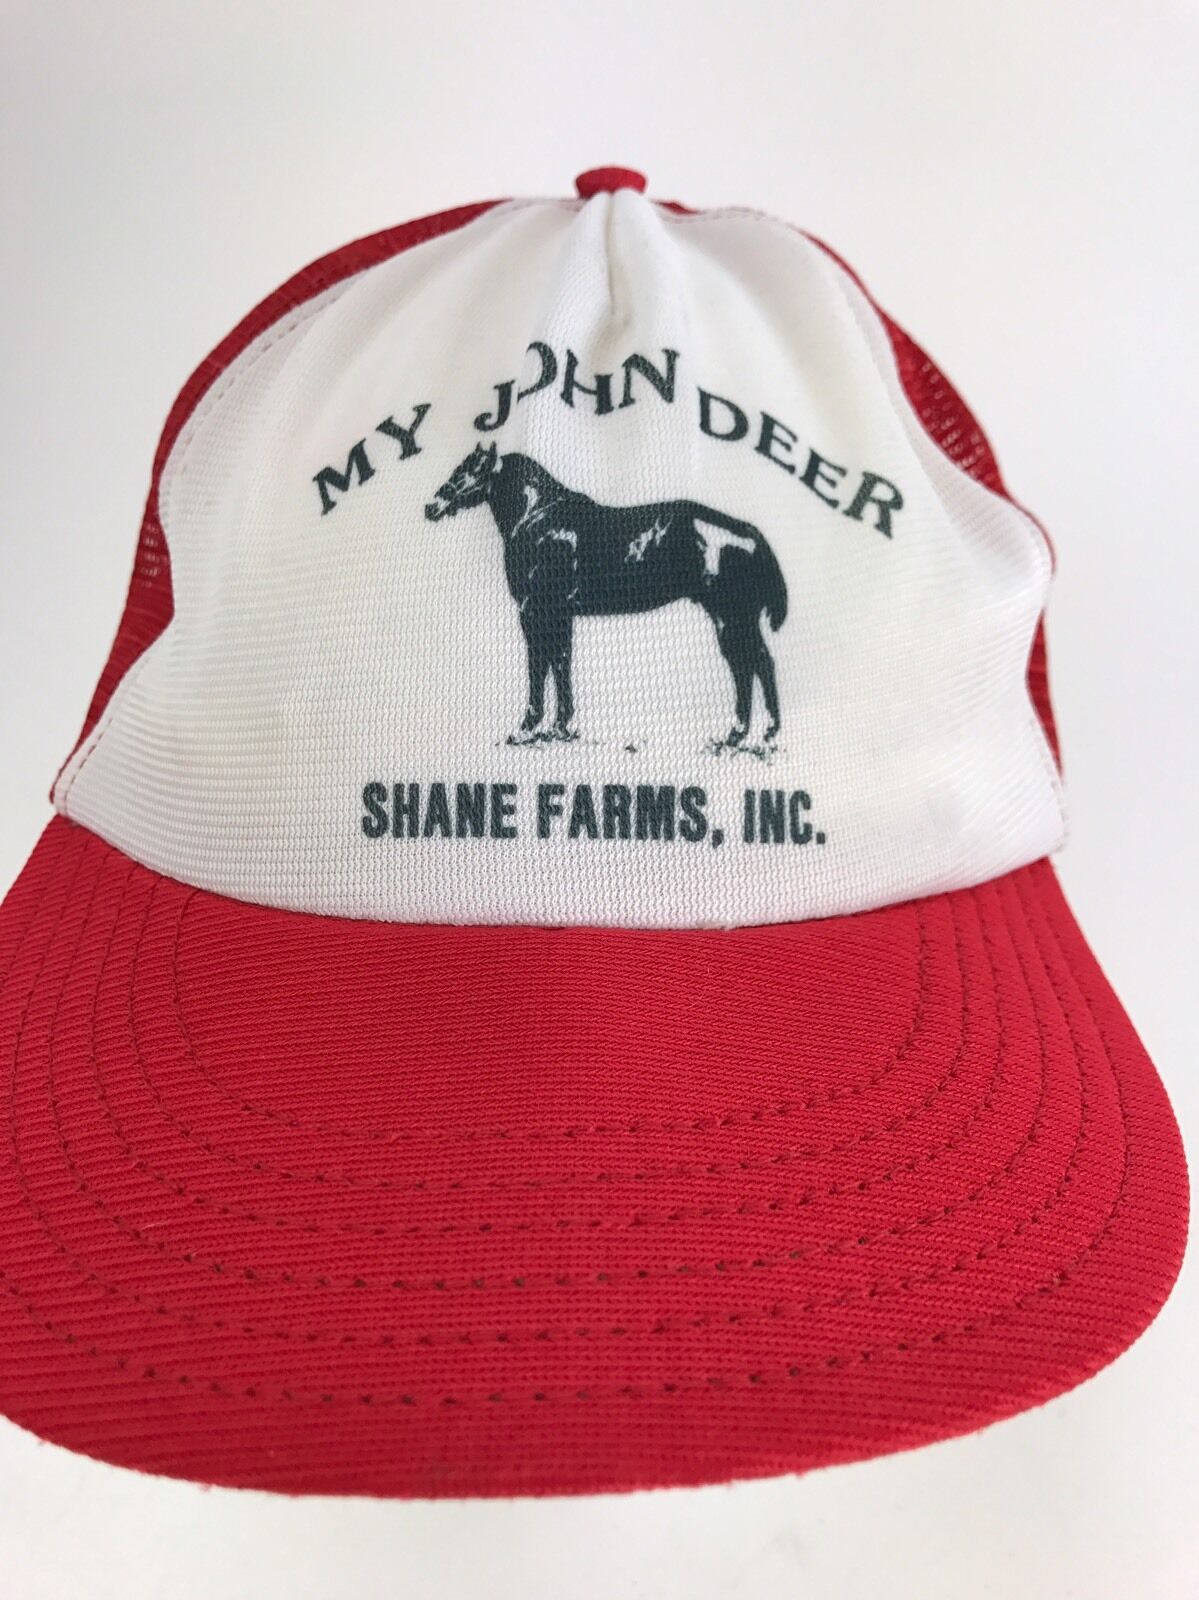 VTG My John Deere Horse Lovers Hat Cap SnapBack Trucker Farmer Red